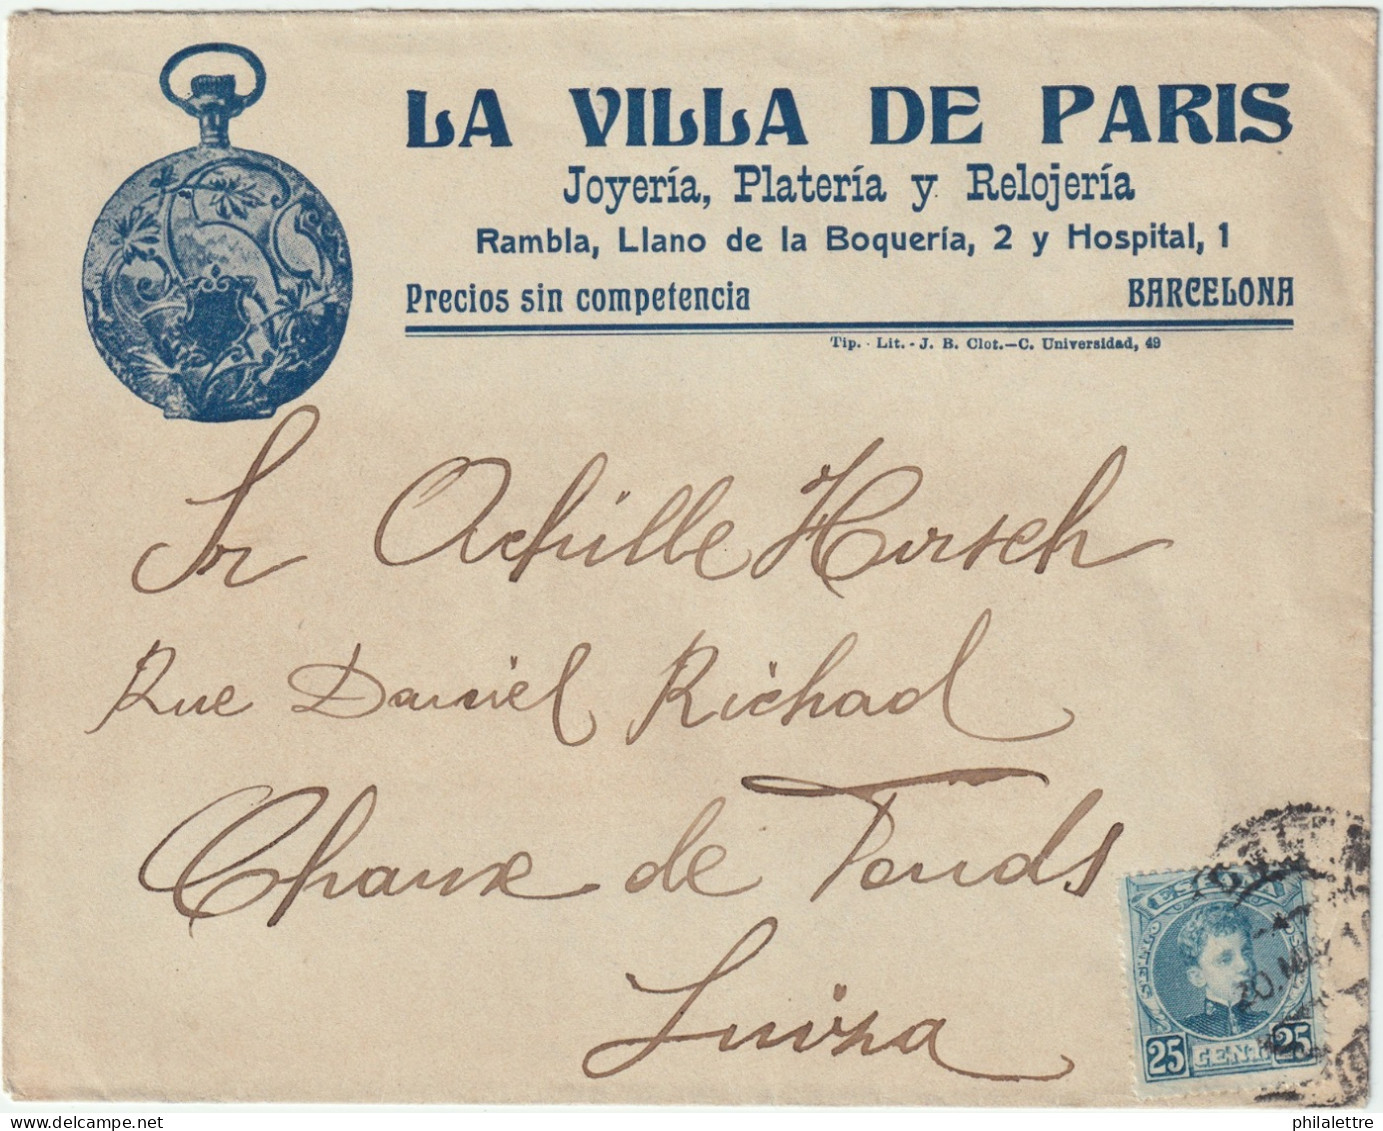 ESPAGNE/ESPAÑA 1910 Ed.248 En Sobre Con Membrete “LA VILLA DE PARIS" Ilustrado (reloj) De Barcelona à Suiza - Brieven En Documenten